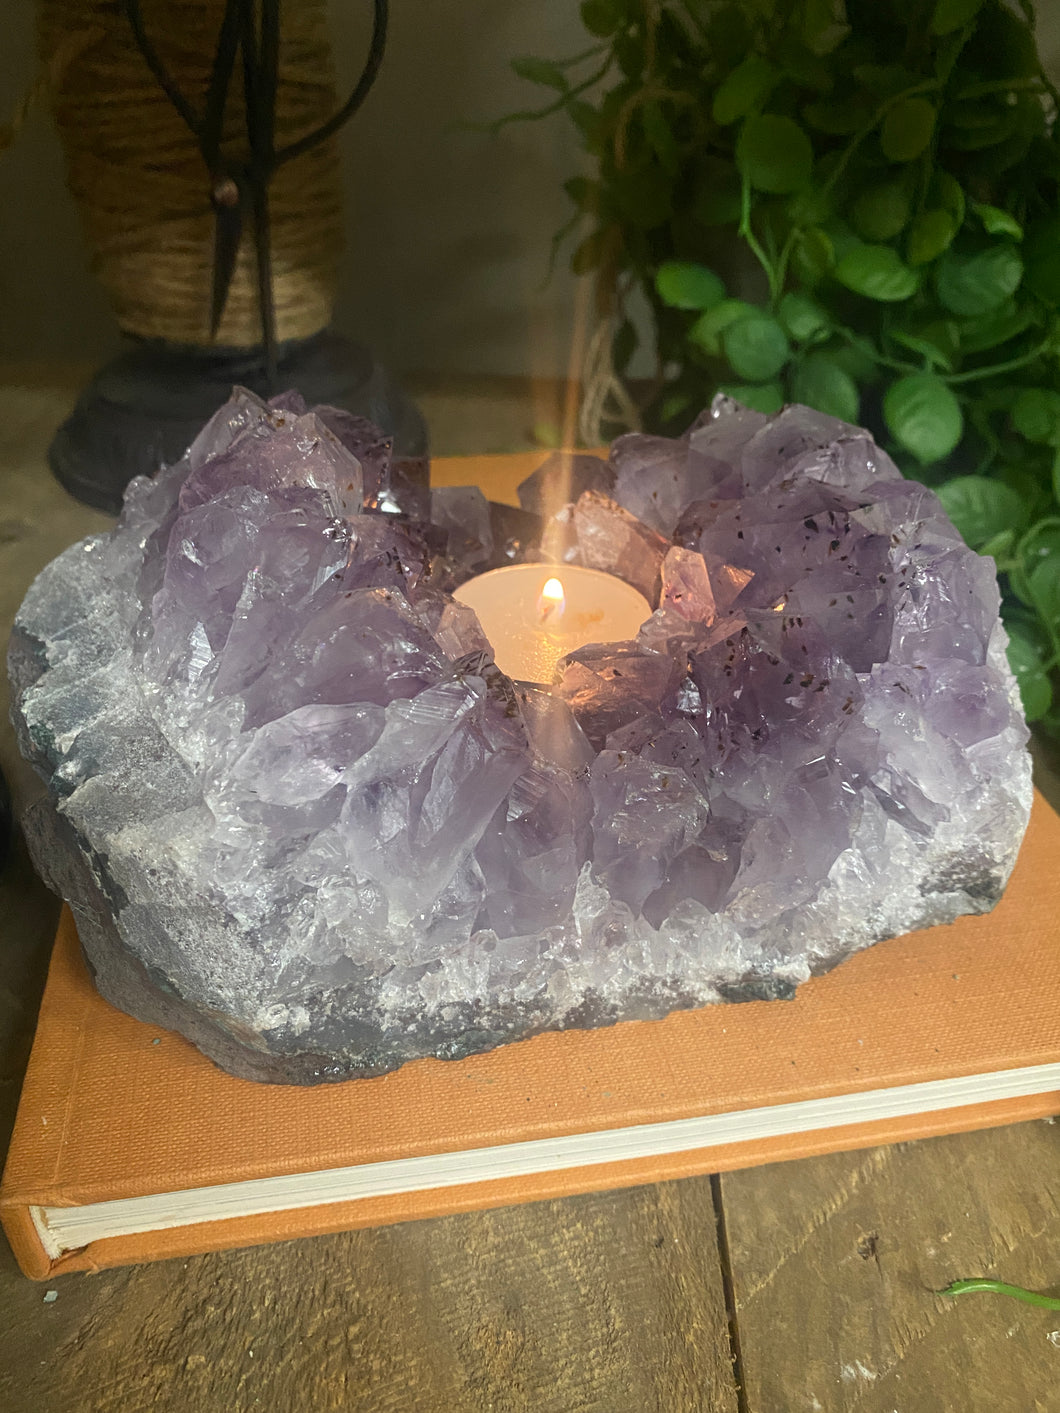 Amethyst Crystal tea light candle holder - home décor